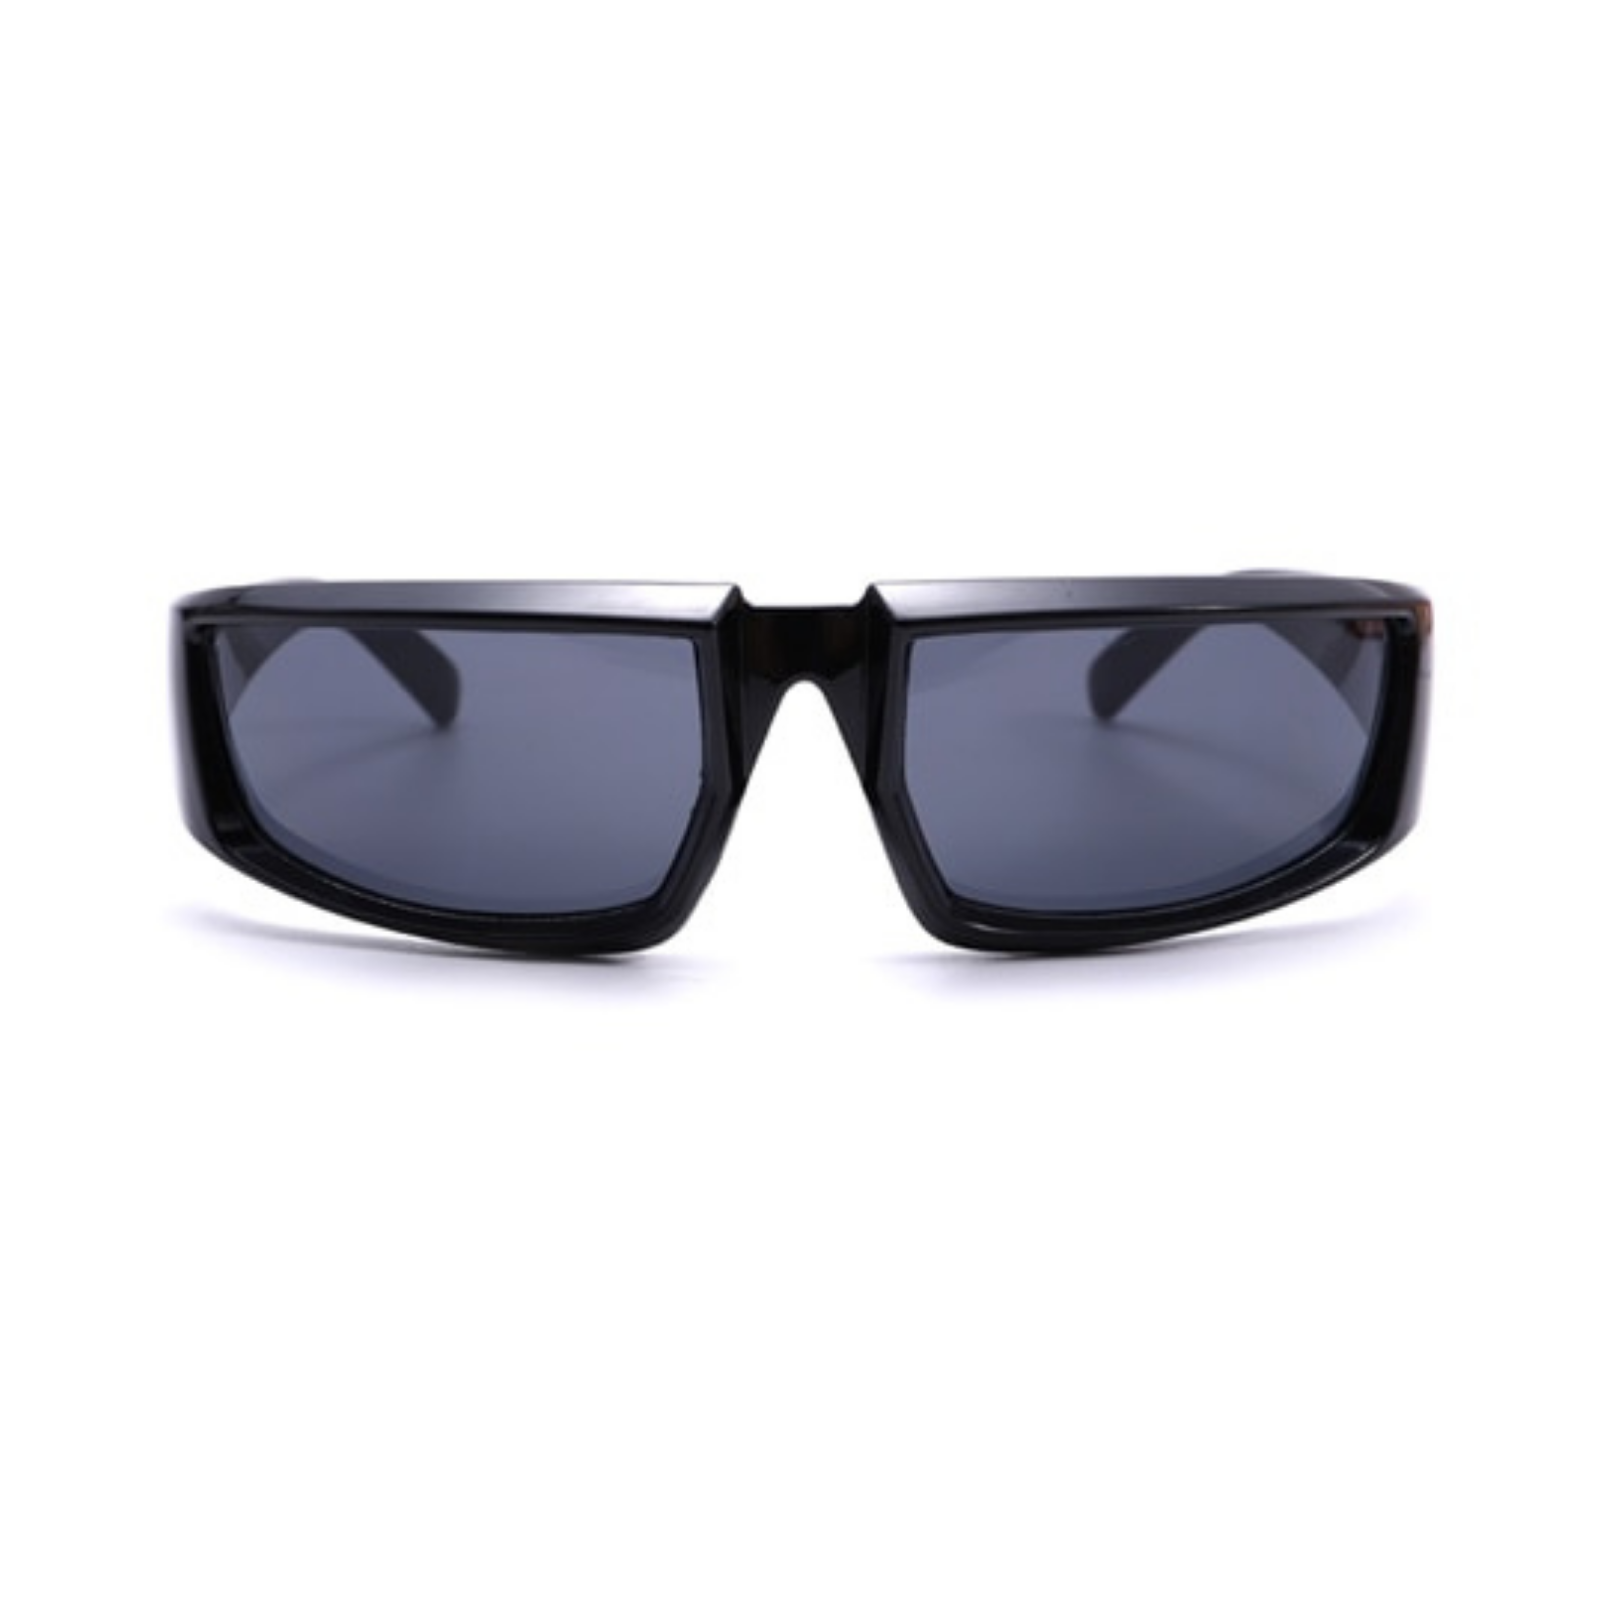 Lexus Sunglasses + Black